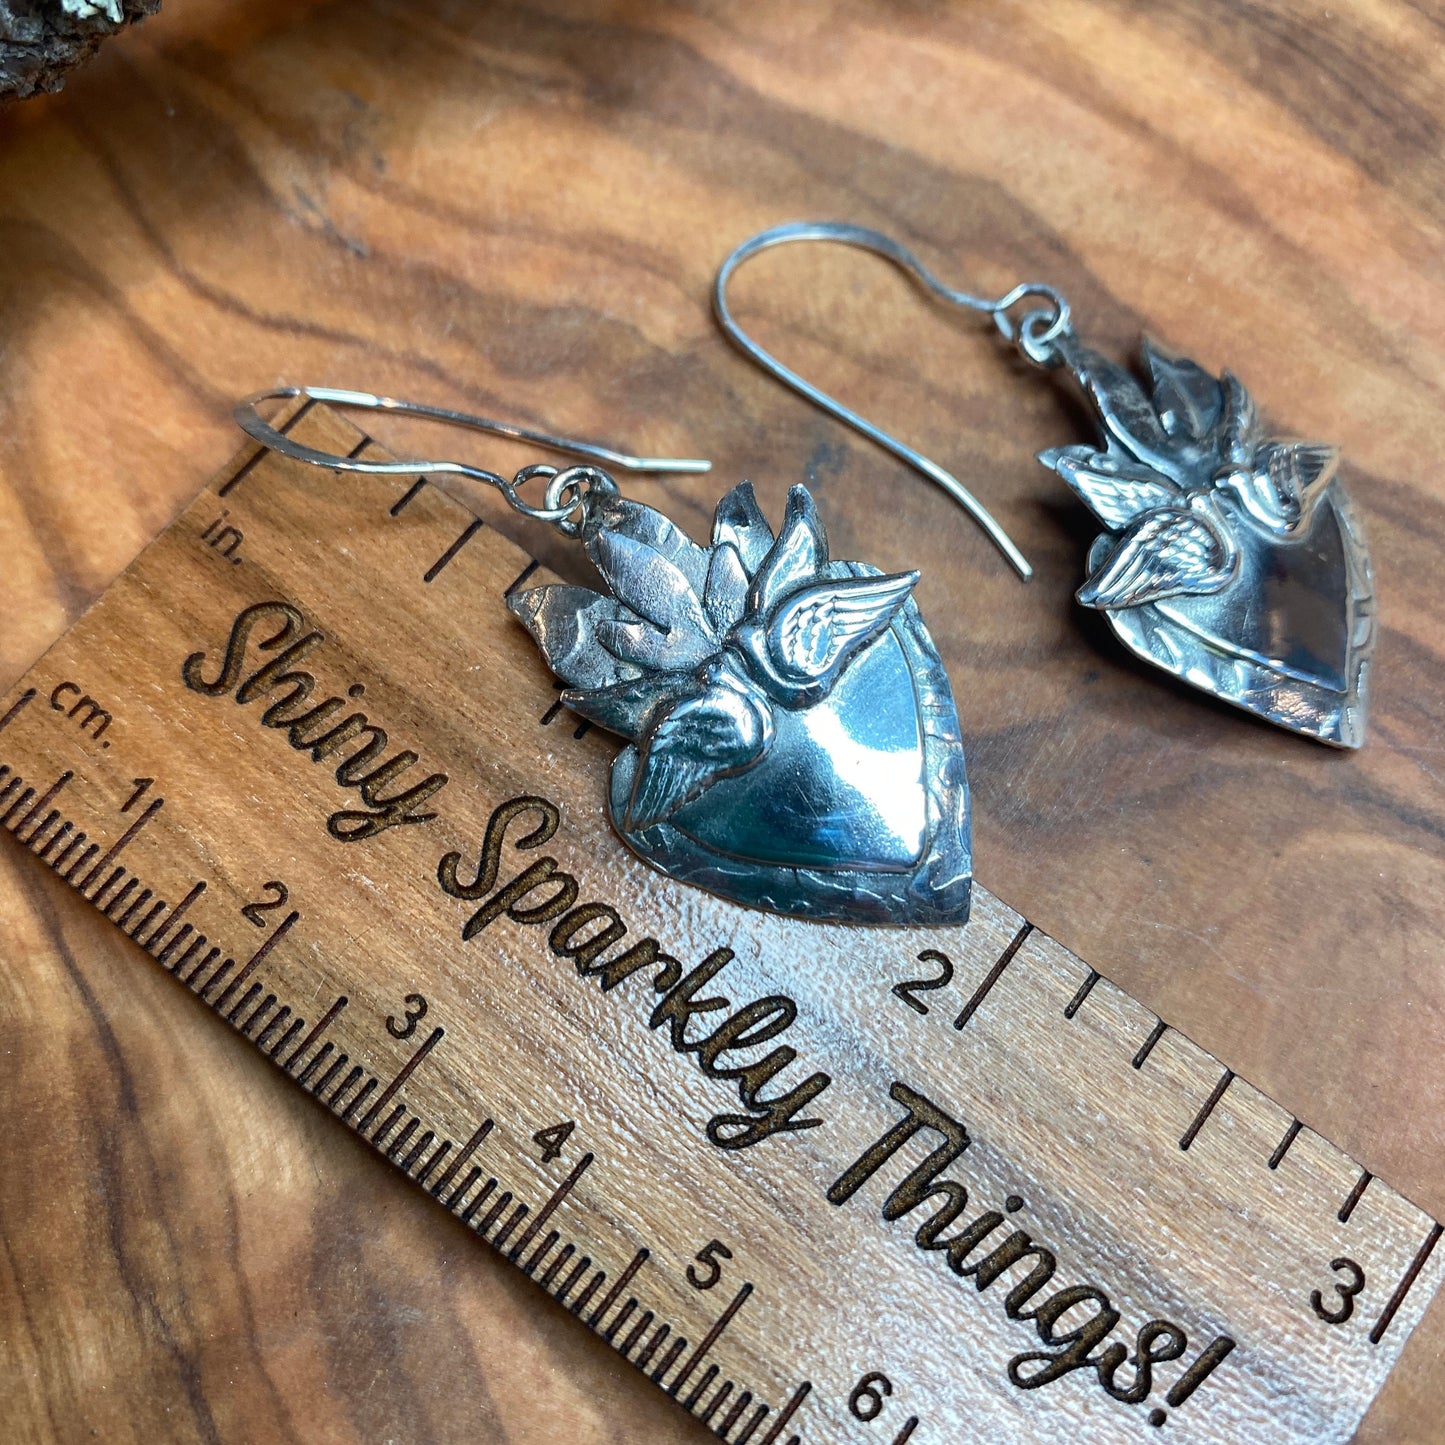 Sacred Heart Earrings with Lovebirds